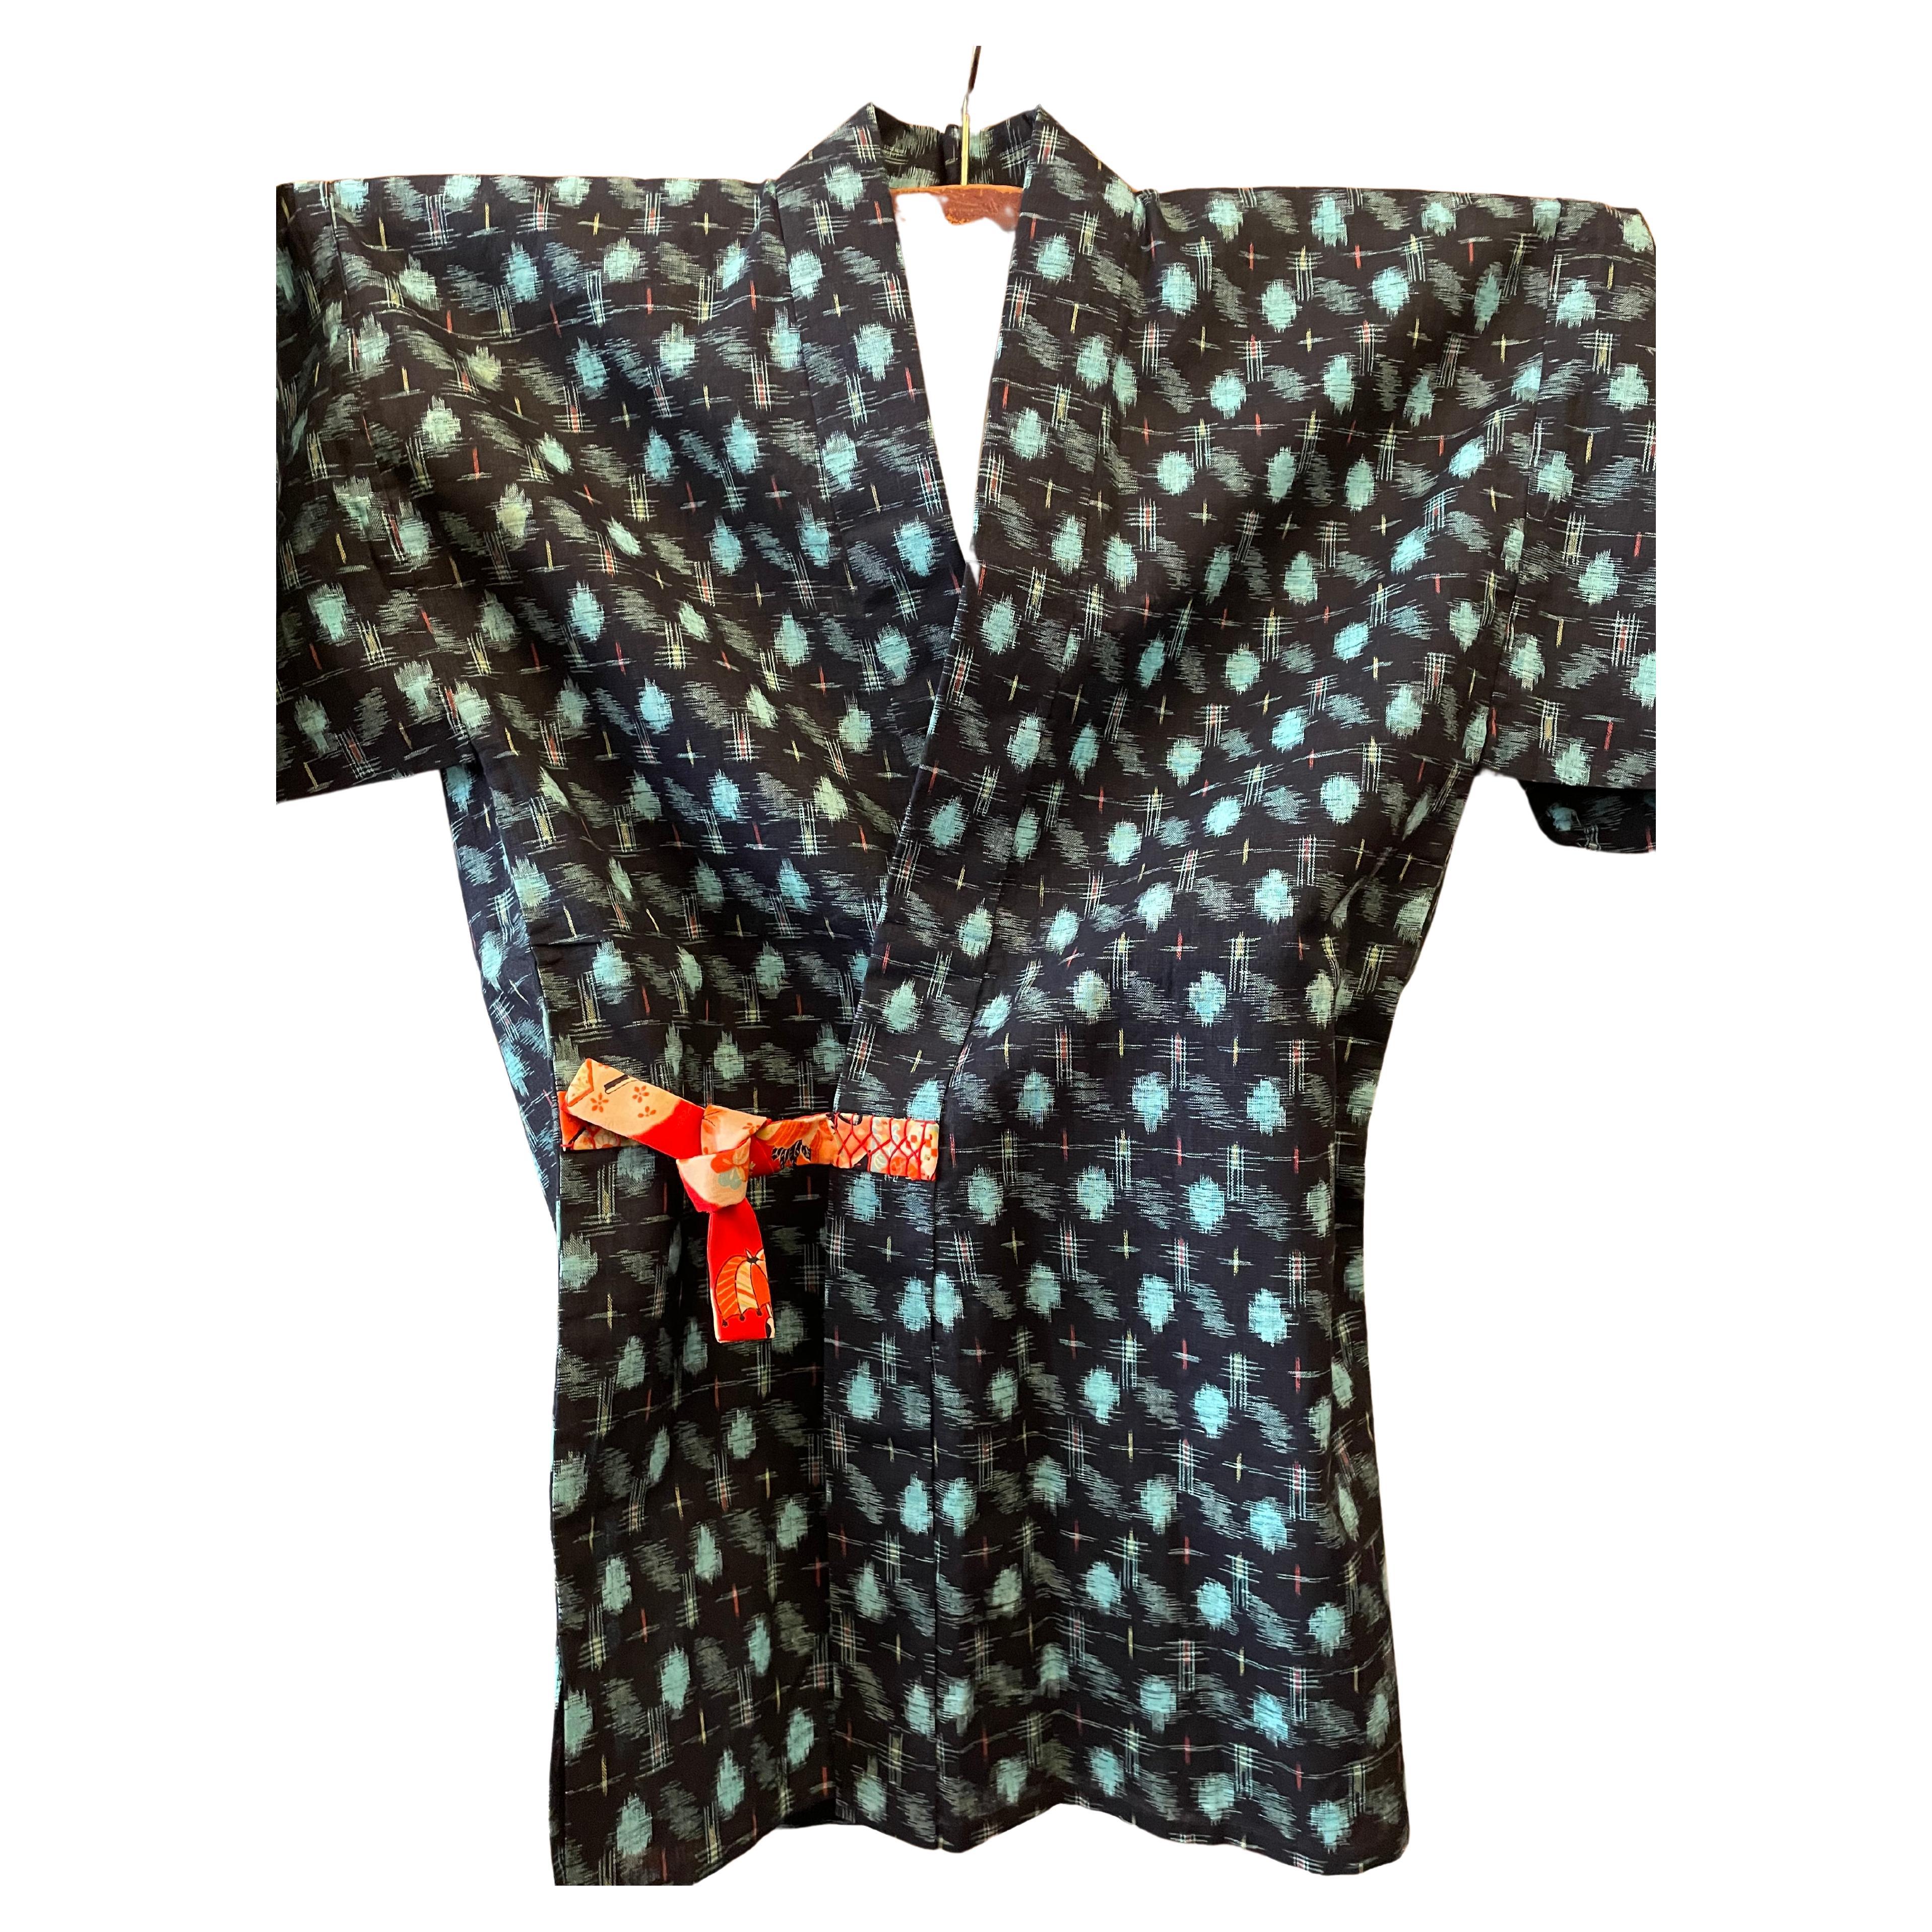 Il s'agit d'une veste fabriquée au Japon, appelée kasuri. Cette veste en kasuri a été fabriquée dans les années 1970.
Certains paysans le portaient pour aller travailler. Il est réalisé en coton Ikat.

Dimensions :
Hauteur du Kasuri 82 cm
Largeur du